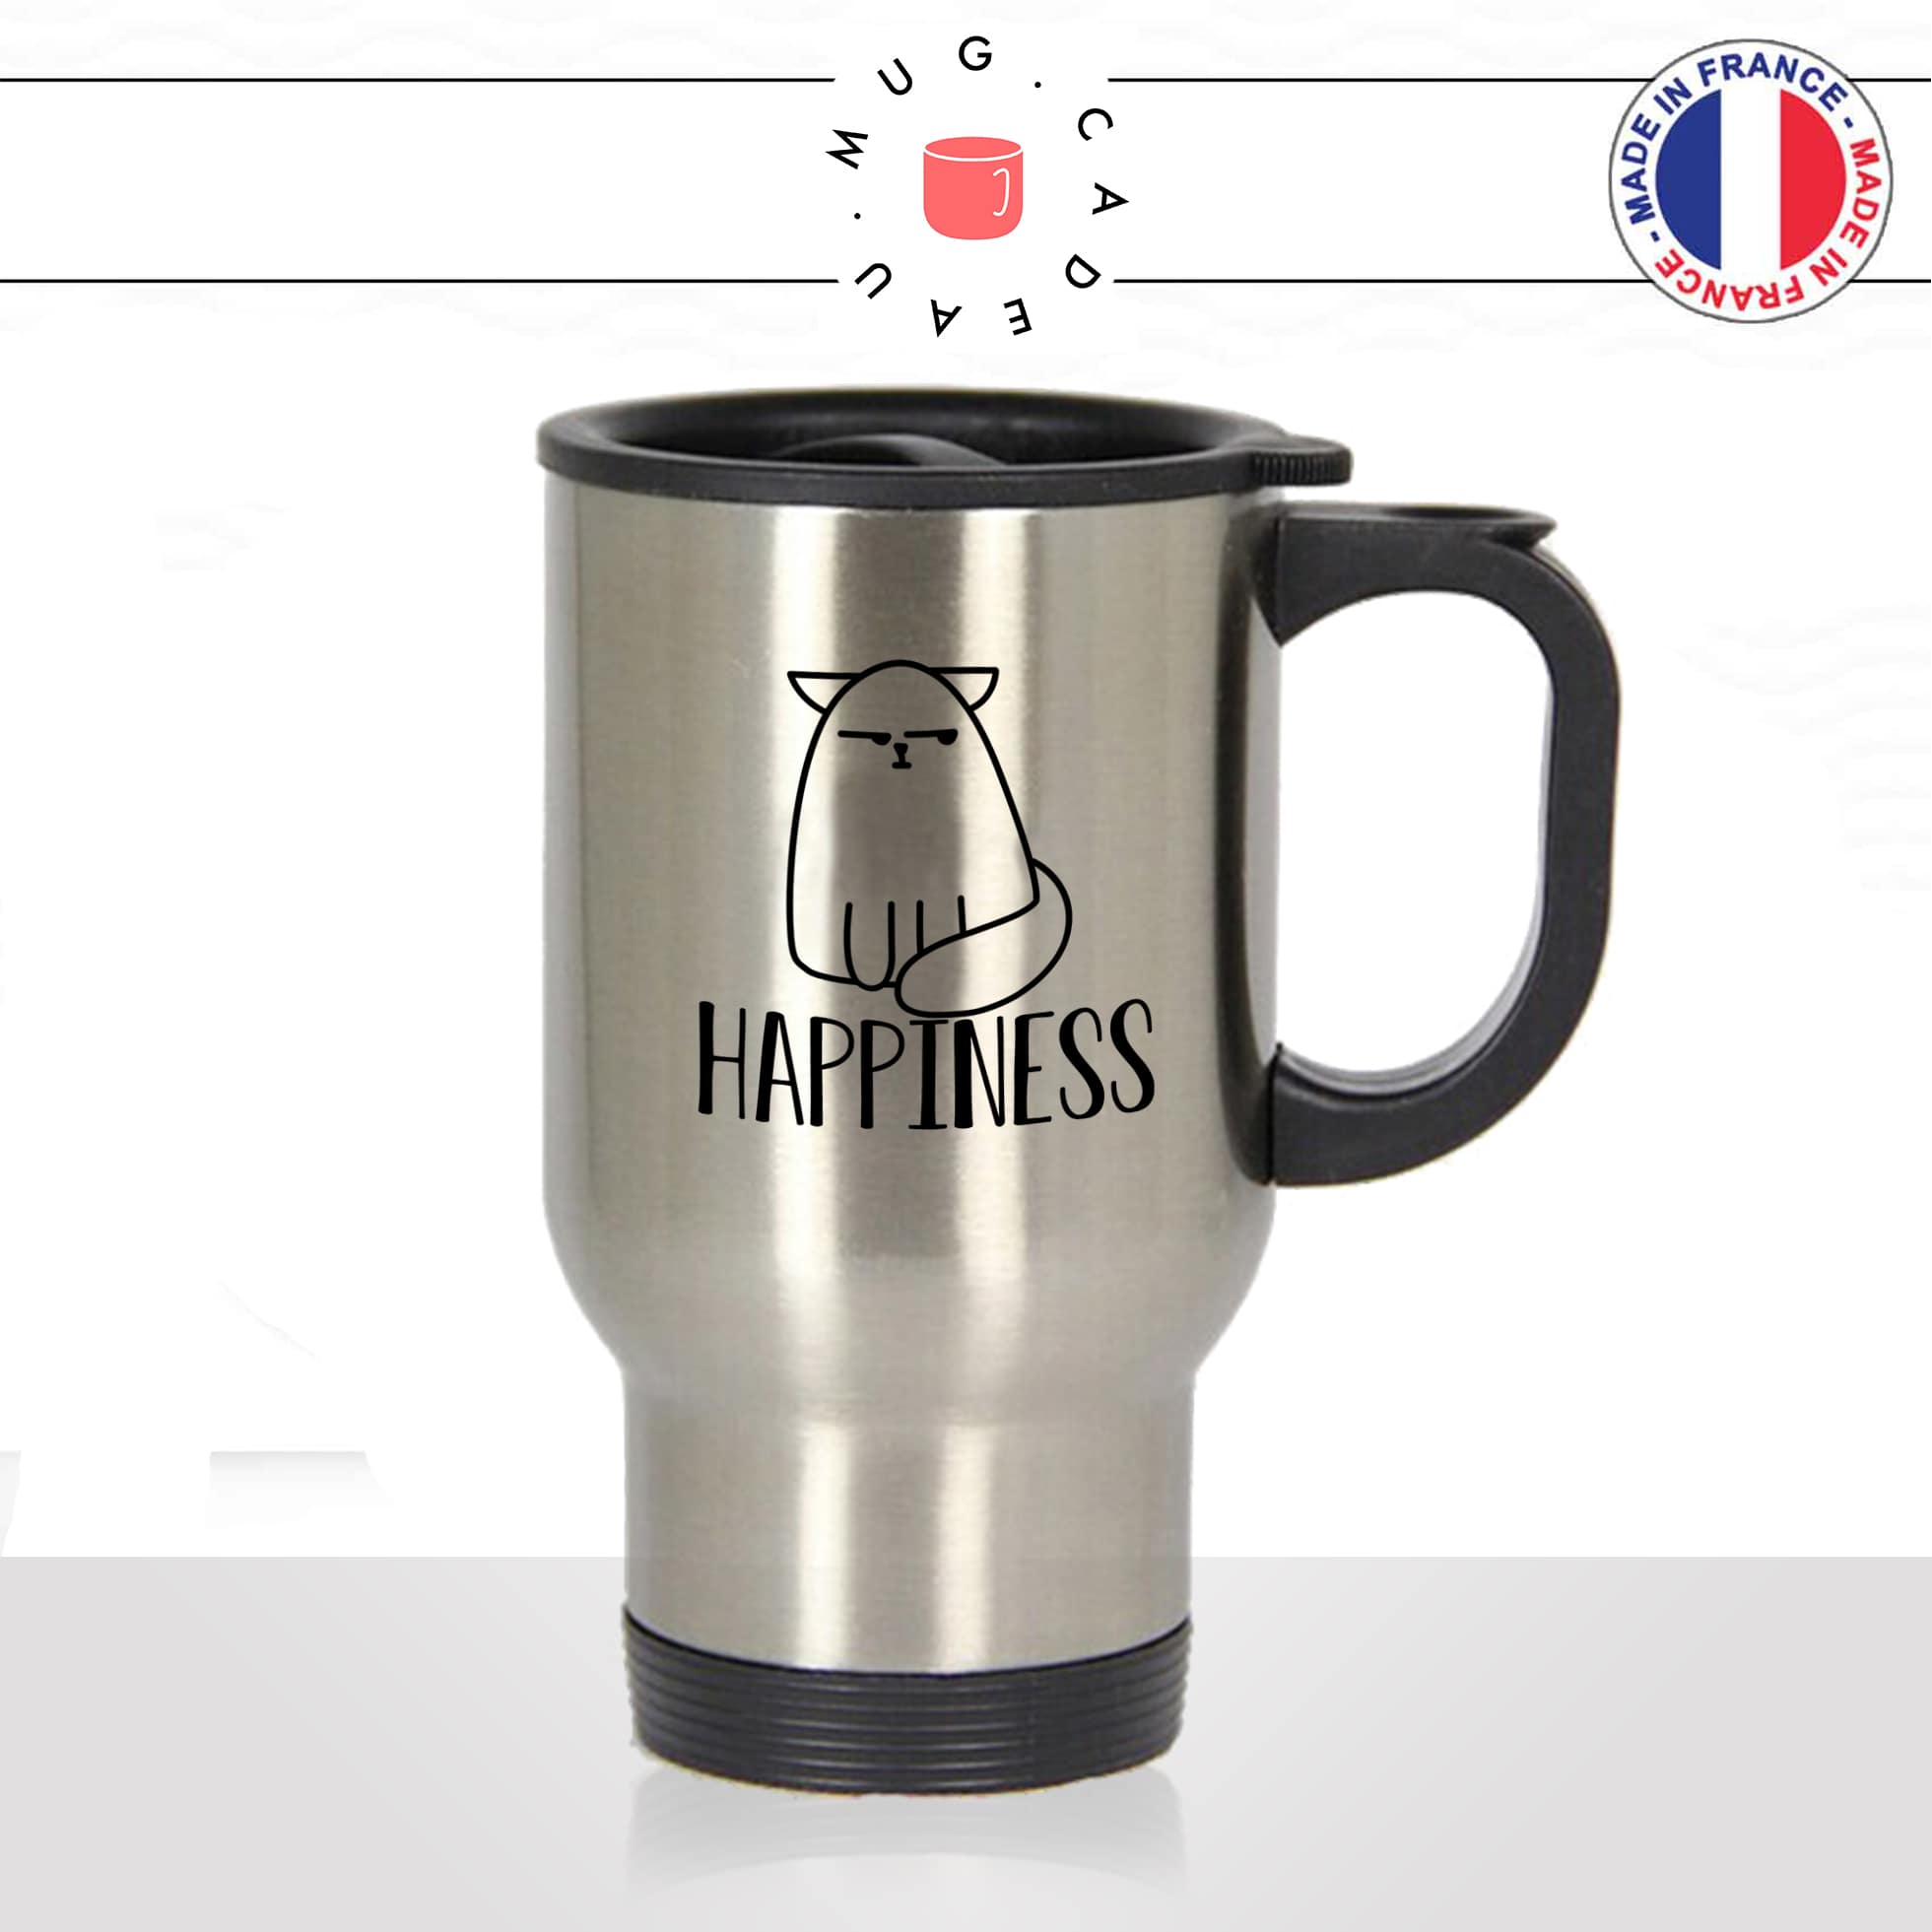 mug-tasse-thermos-de-voyage-café-thé-boisson-animal-animaux-chat-happiness-happy-content-chaton-drole-idée-cadeau-original-fun-cool2-min